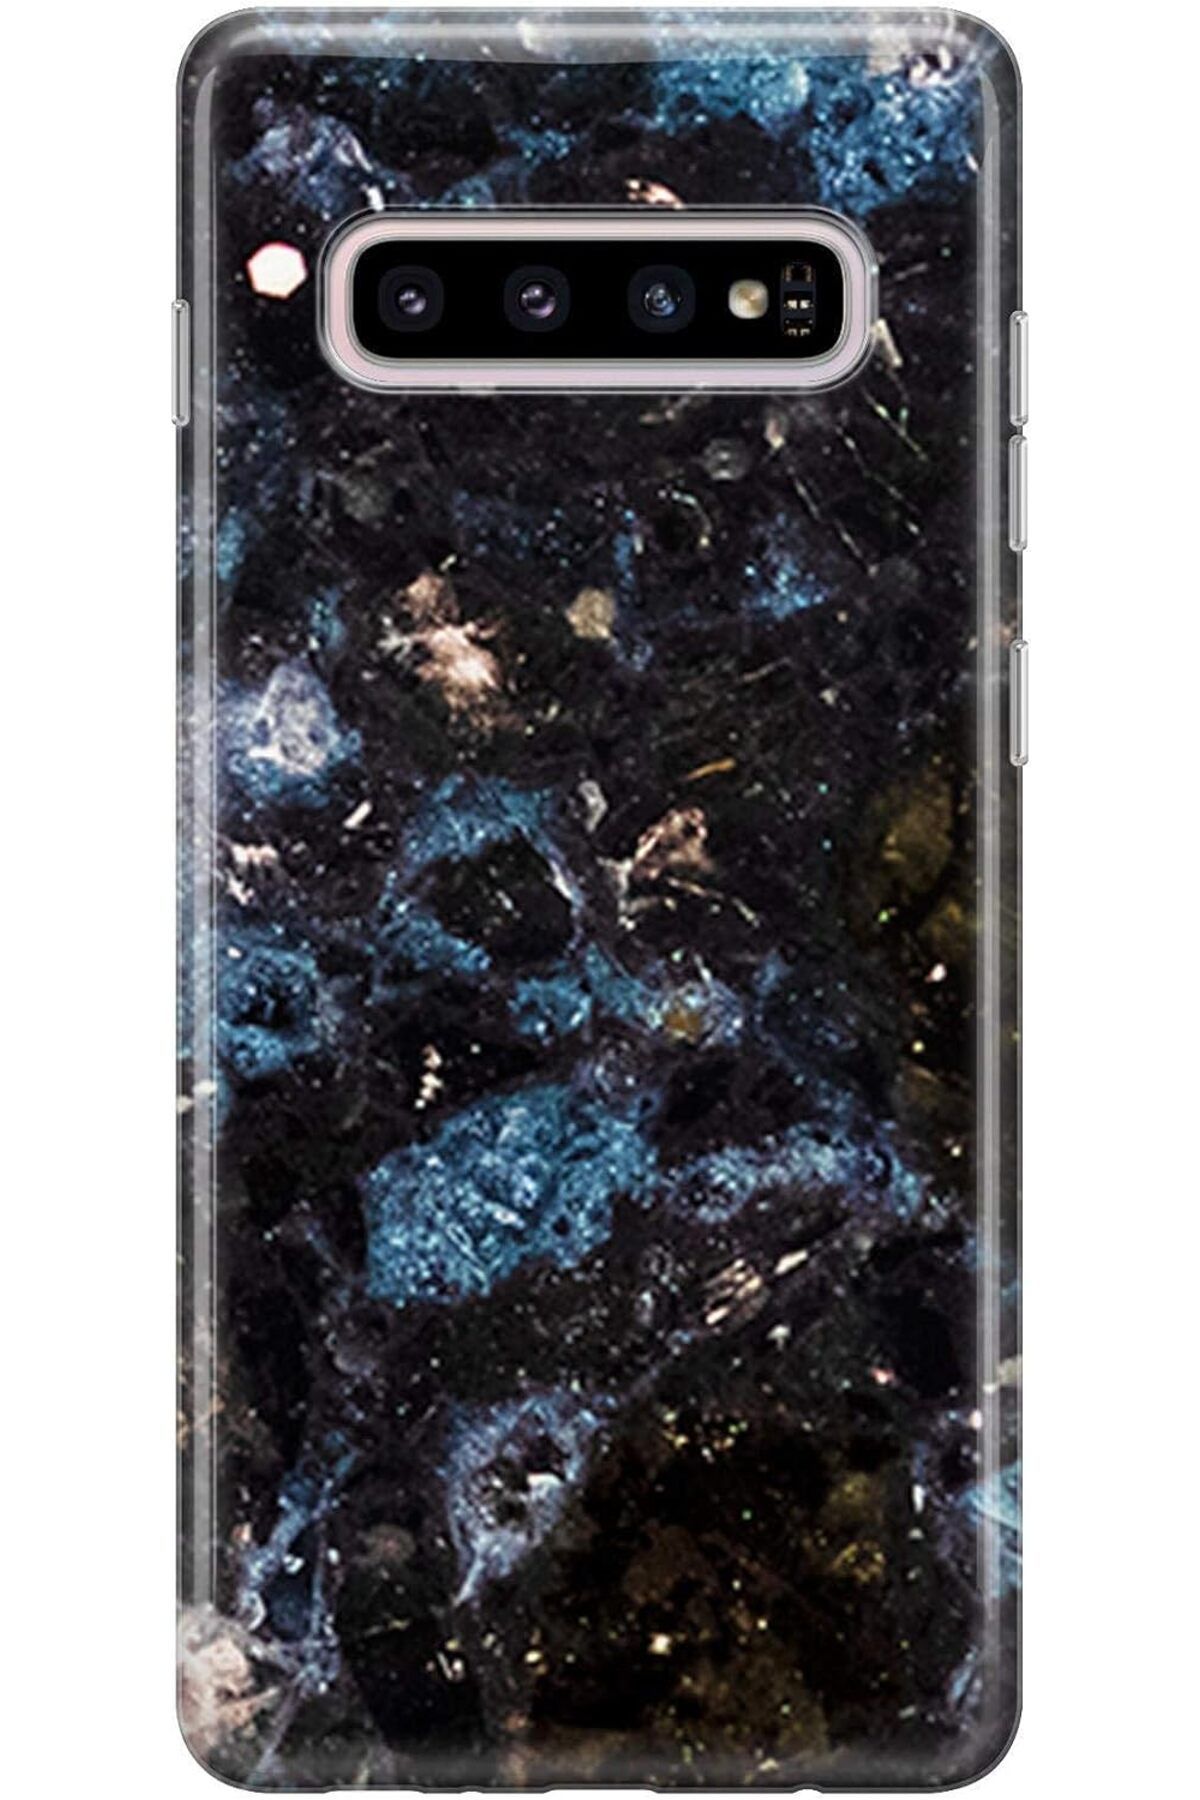 NcK Melefoni 3305 Mermer Galaxy S10 Kılıf, Siyah Mavi